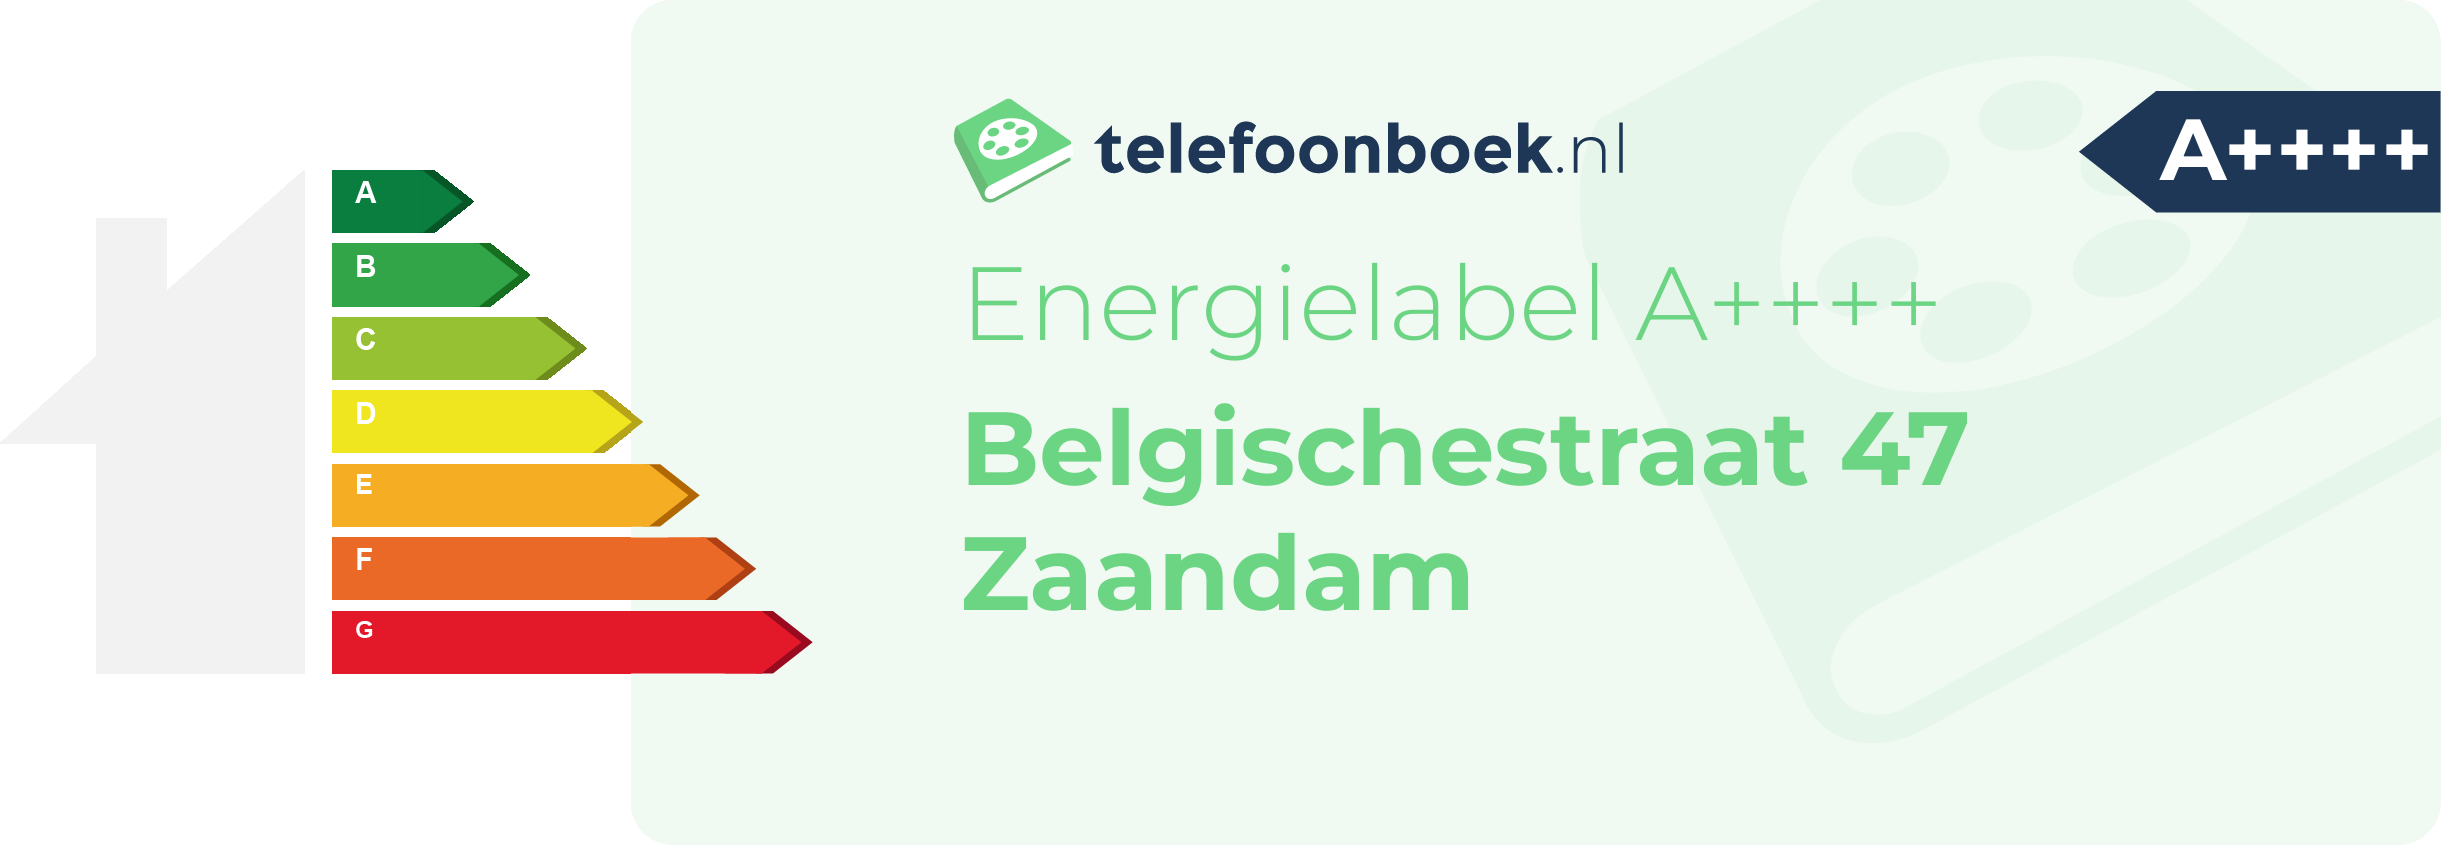 Energielabel Belgischestraat 47 Zaandam